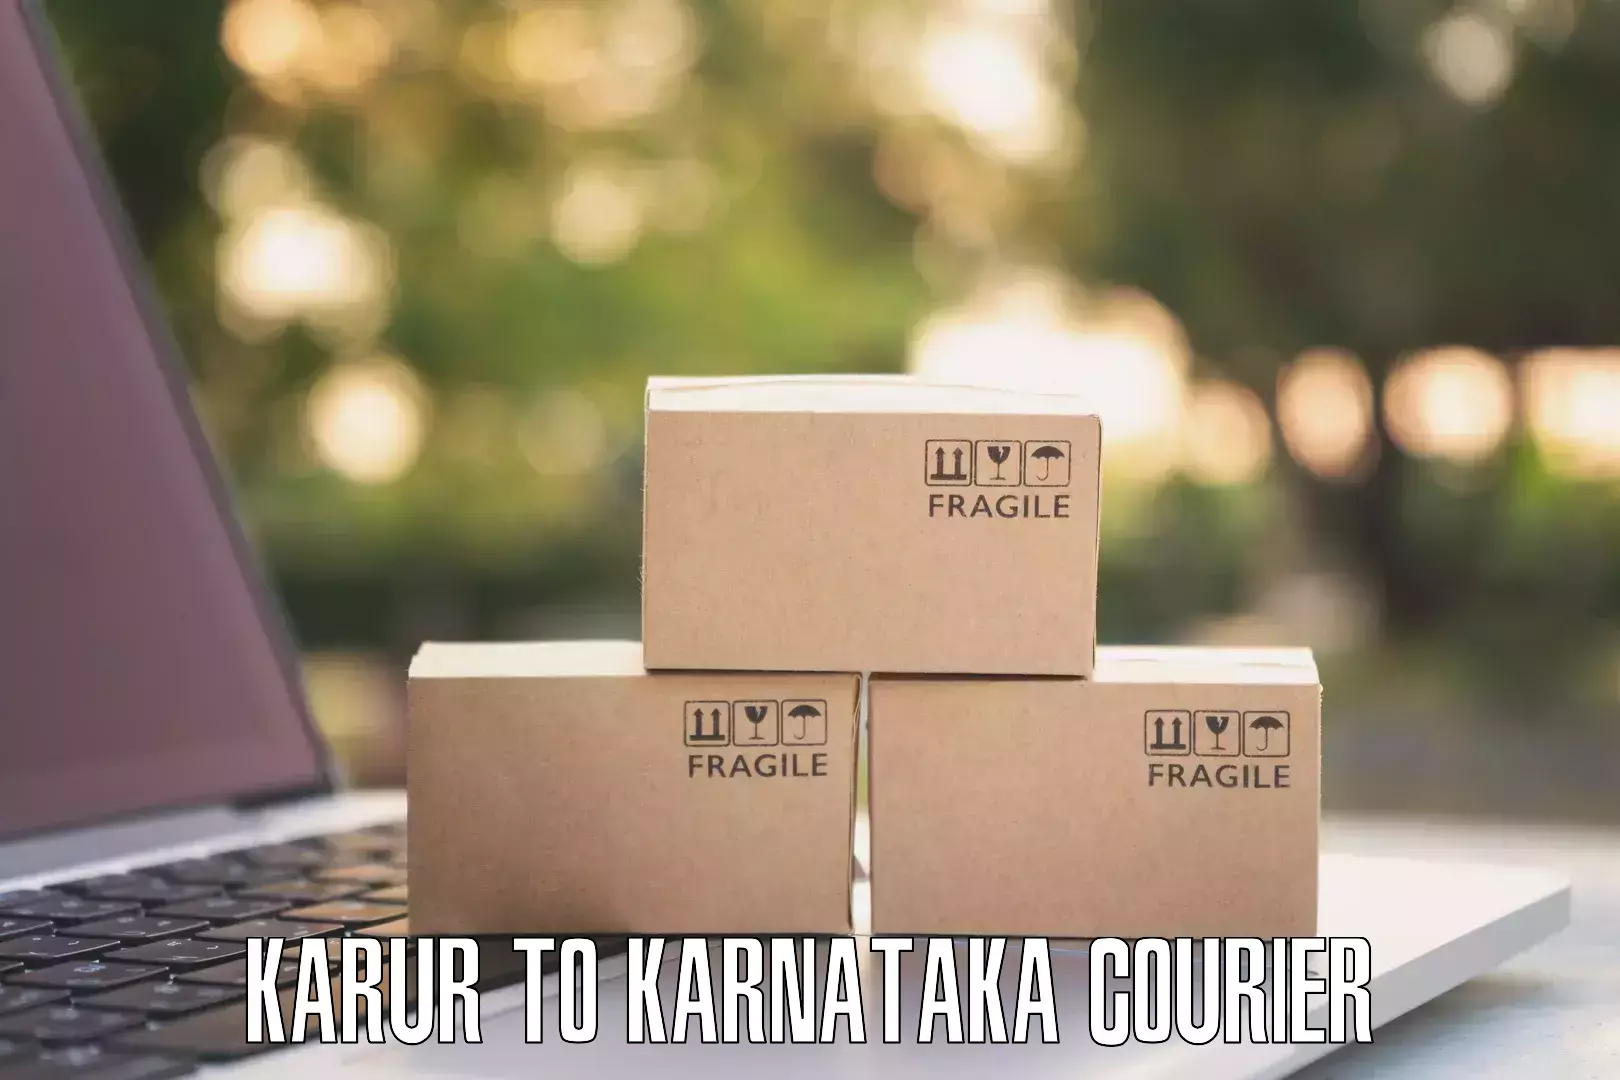 Efficient cargo handling Karur to Bangarapet